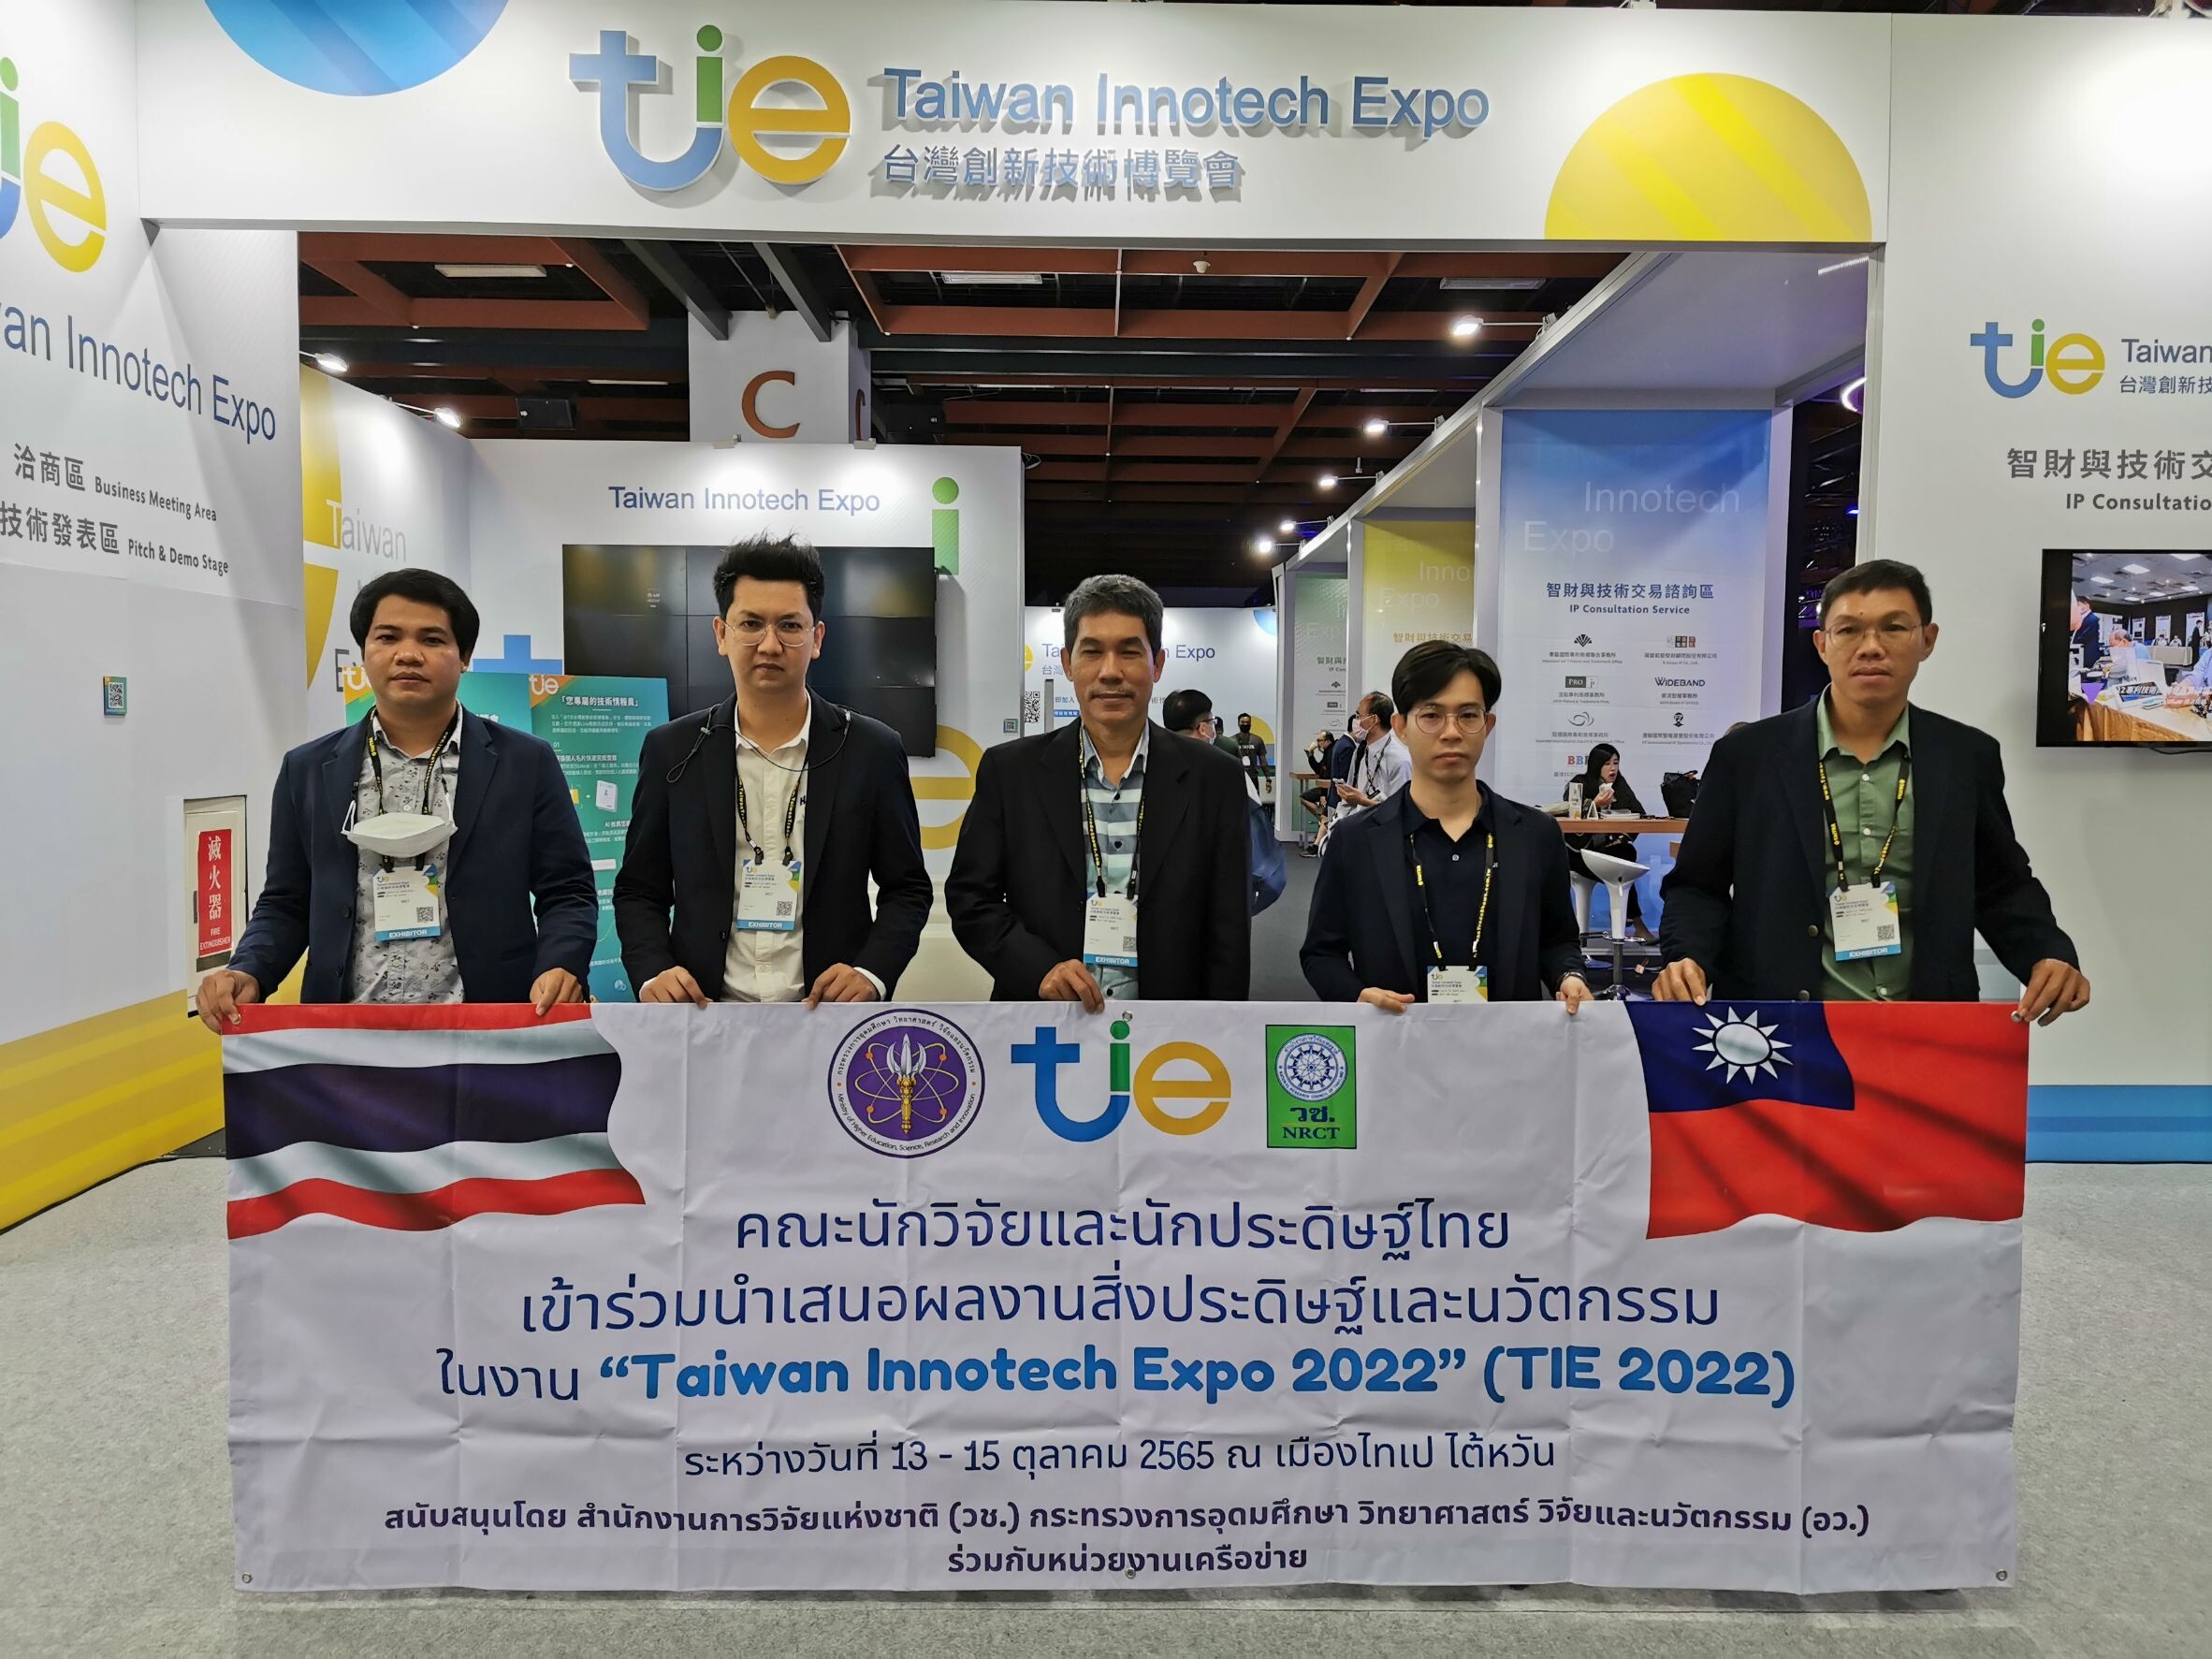 วช. นำคณะนักประดิษฐ์ นักวิจัยไทย คว้ารางวัลจากการประกวดสิ่งประดิษฐ์และนวัตกรรมระดับนานาชาติ จากเวที "Taiwan Innotech Expo 2022" (TIE 2022)